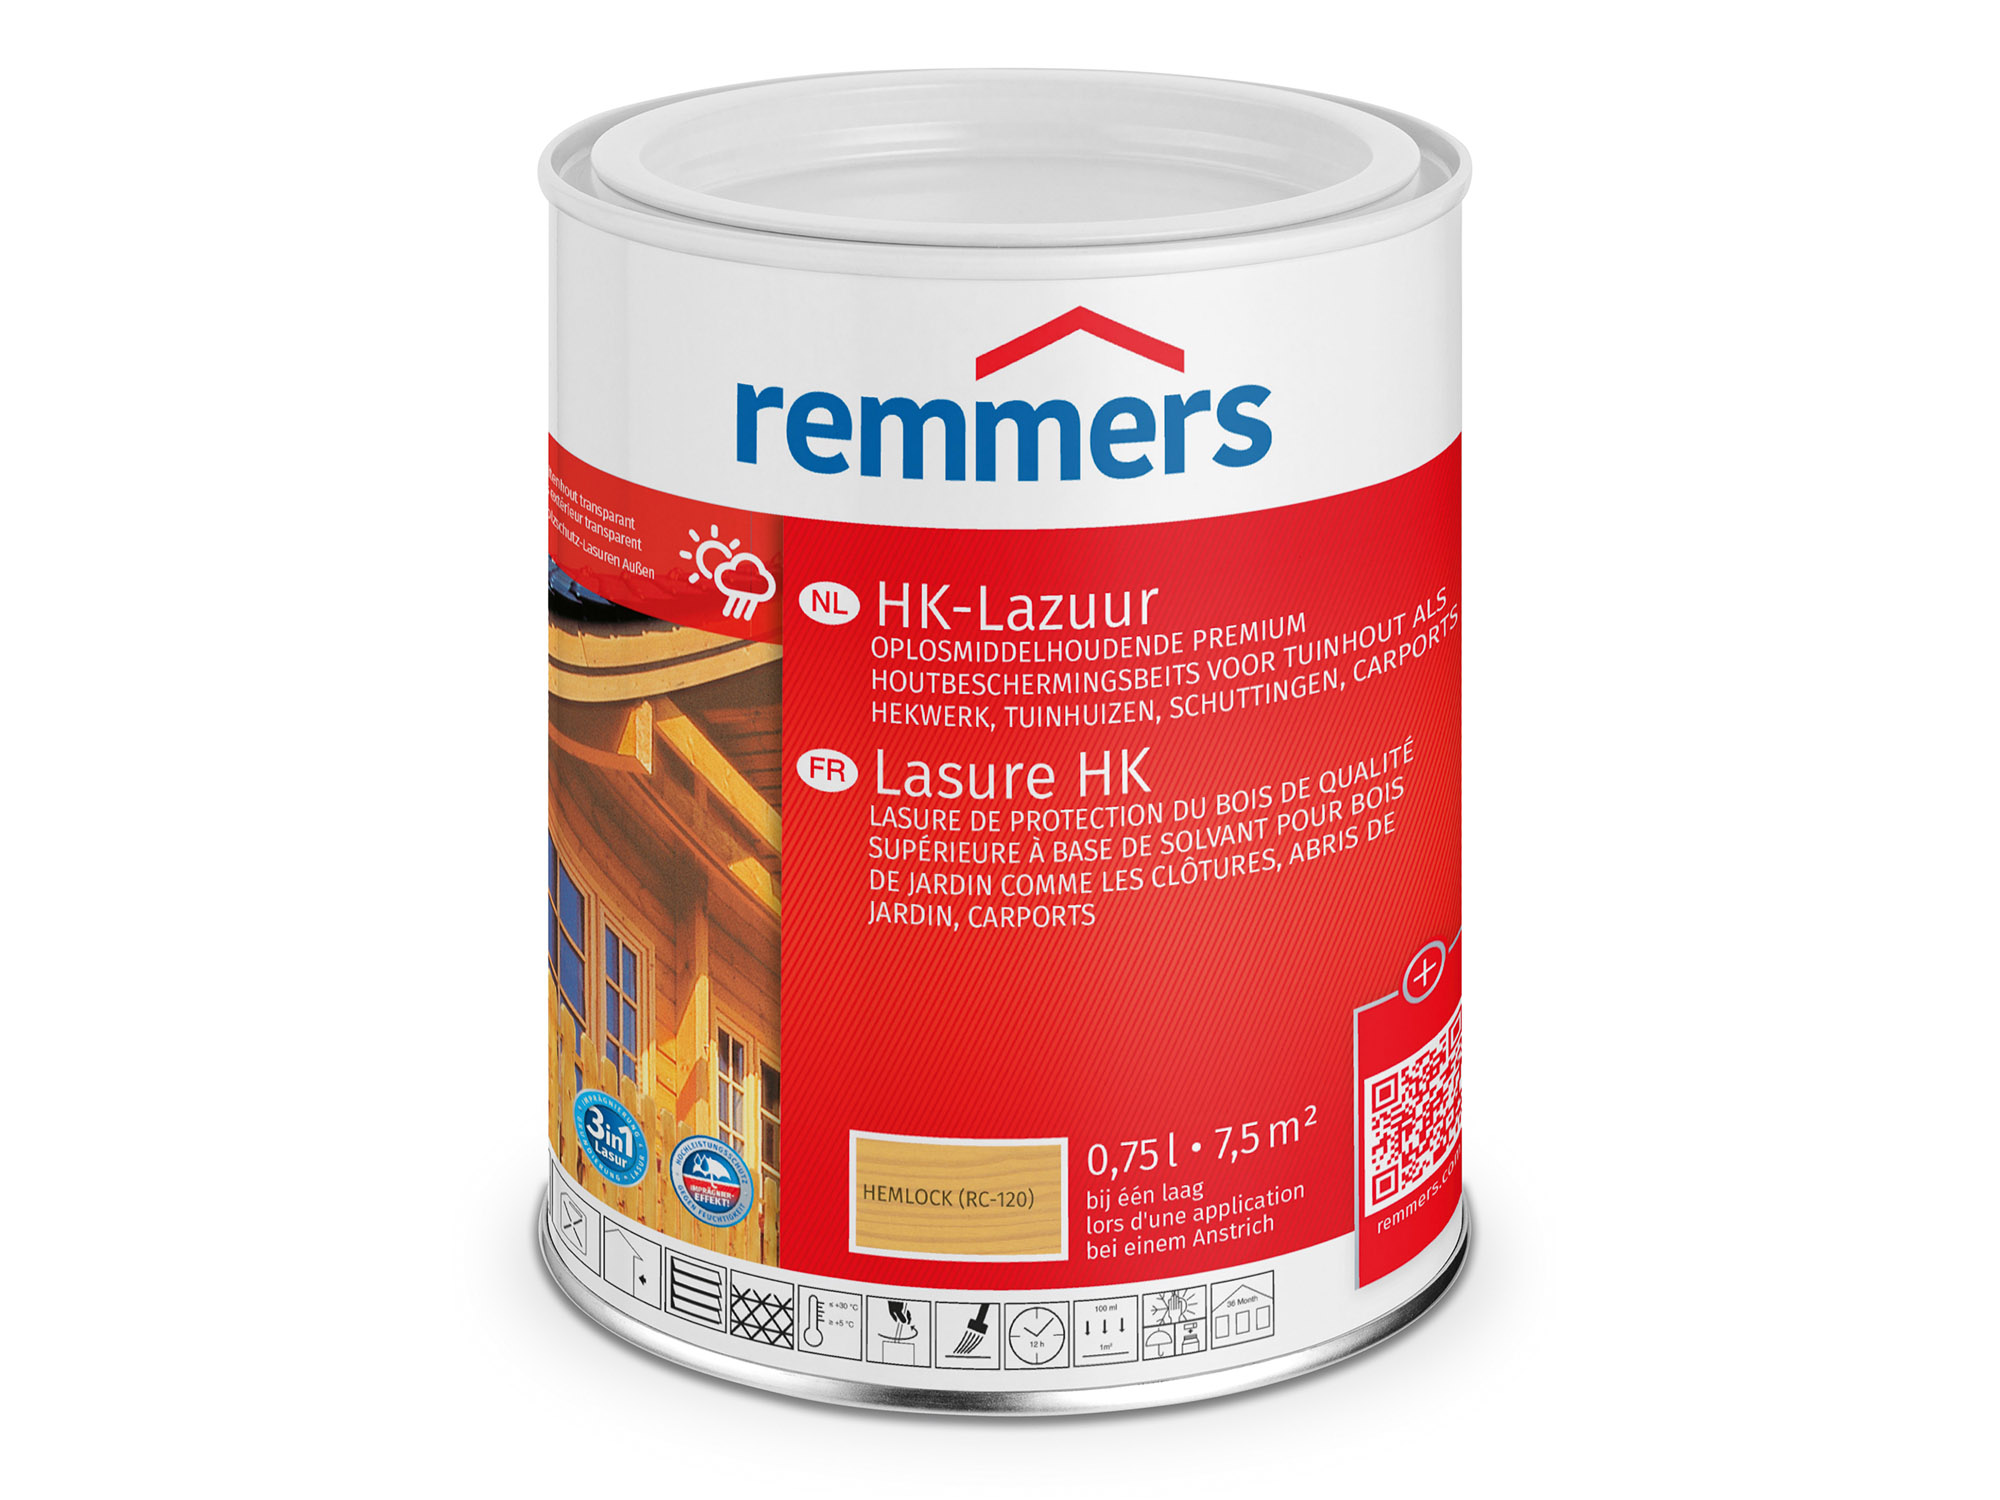 Remmers HK-Lazuur Hemlock